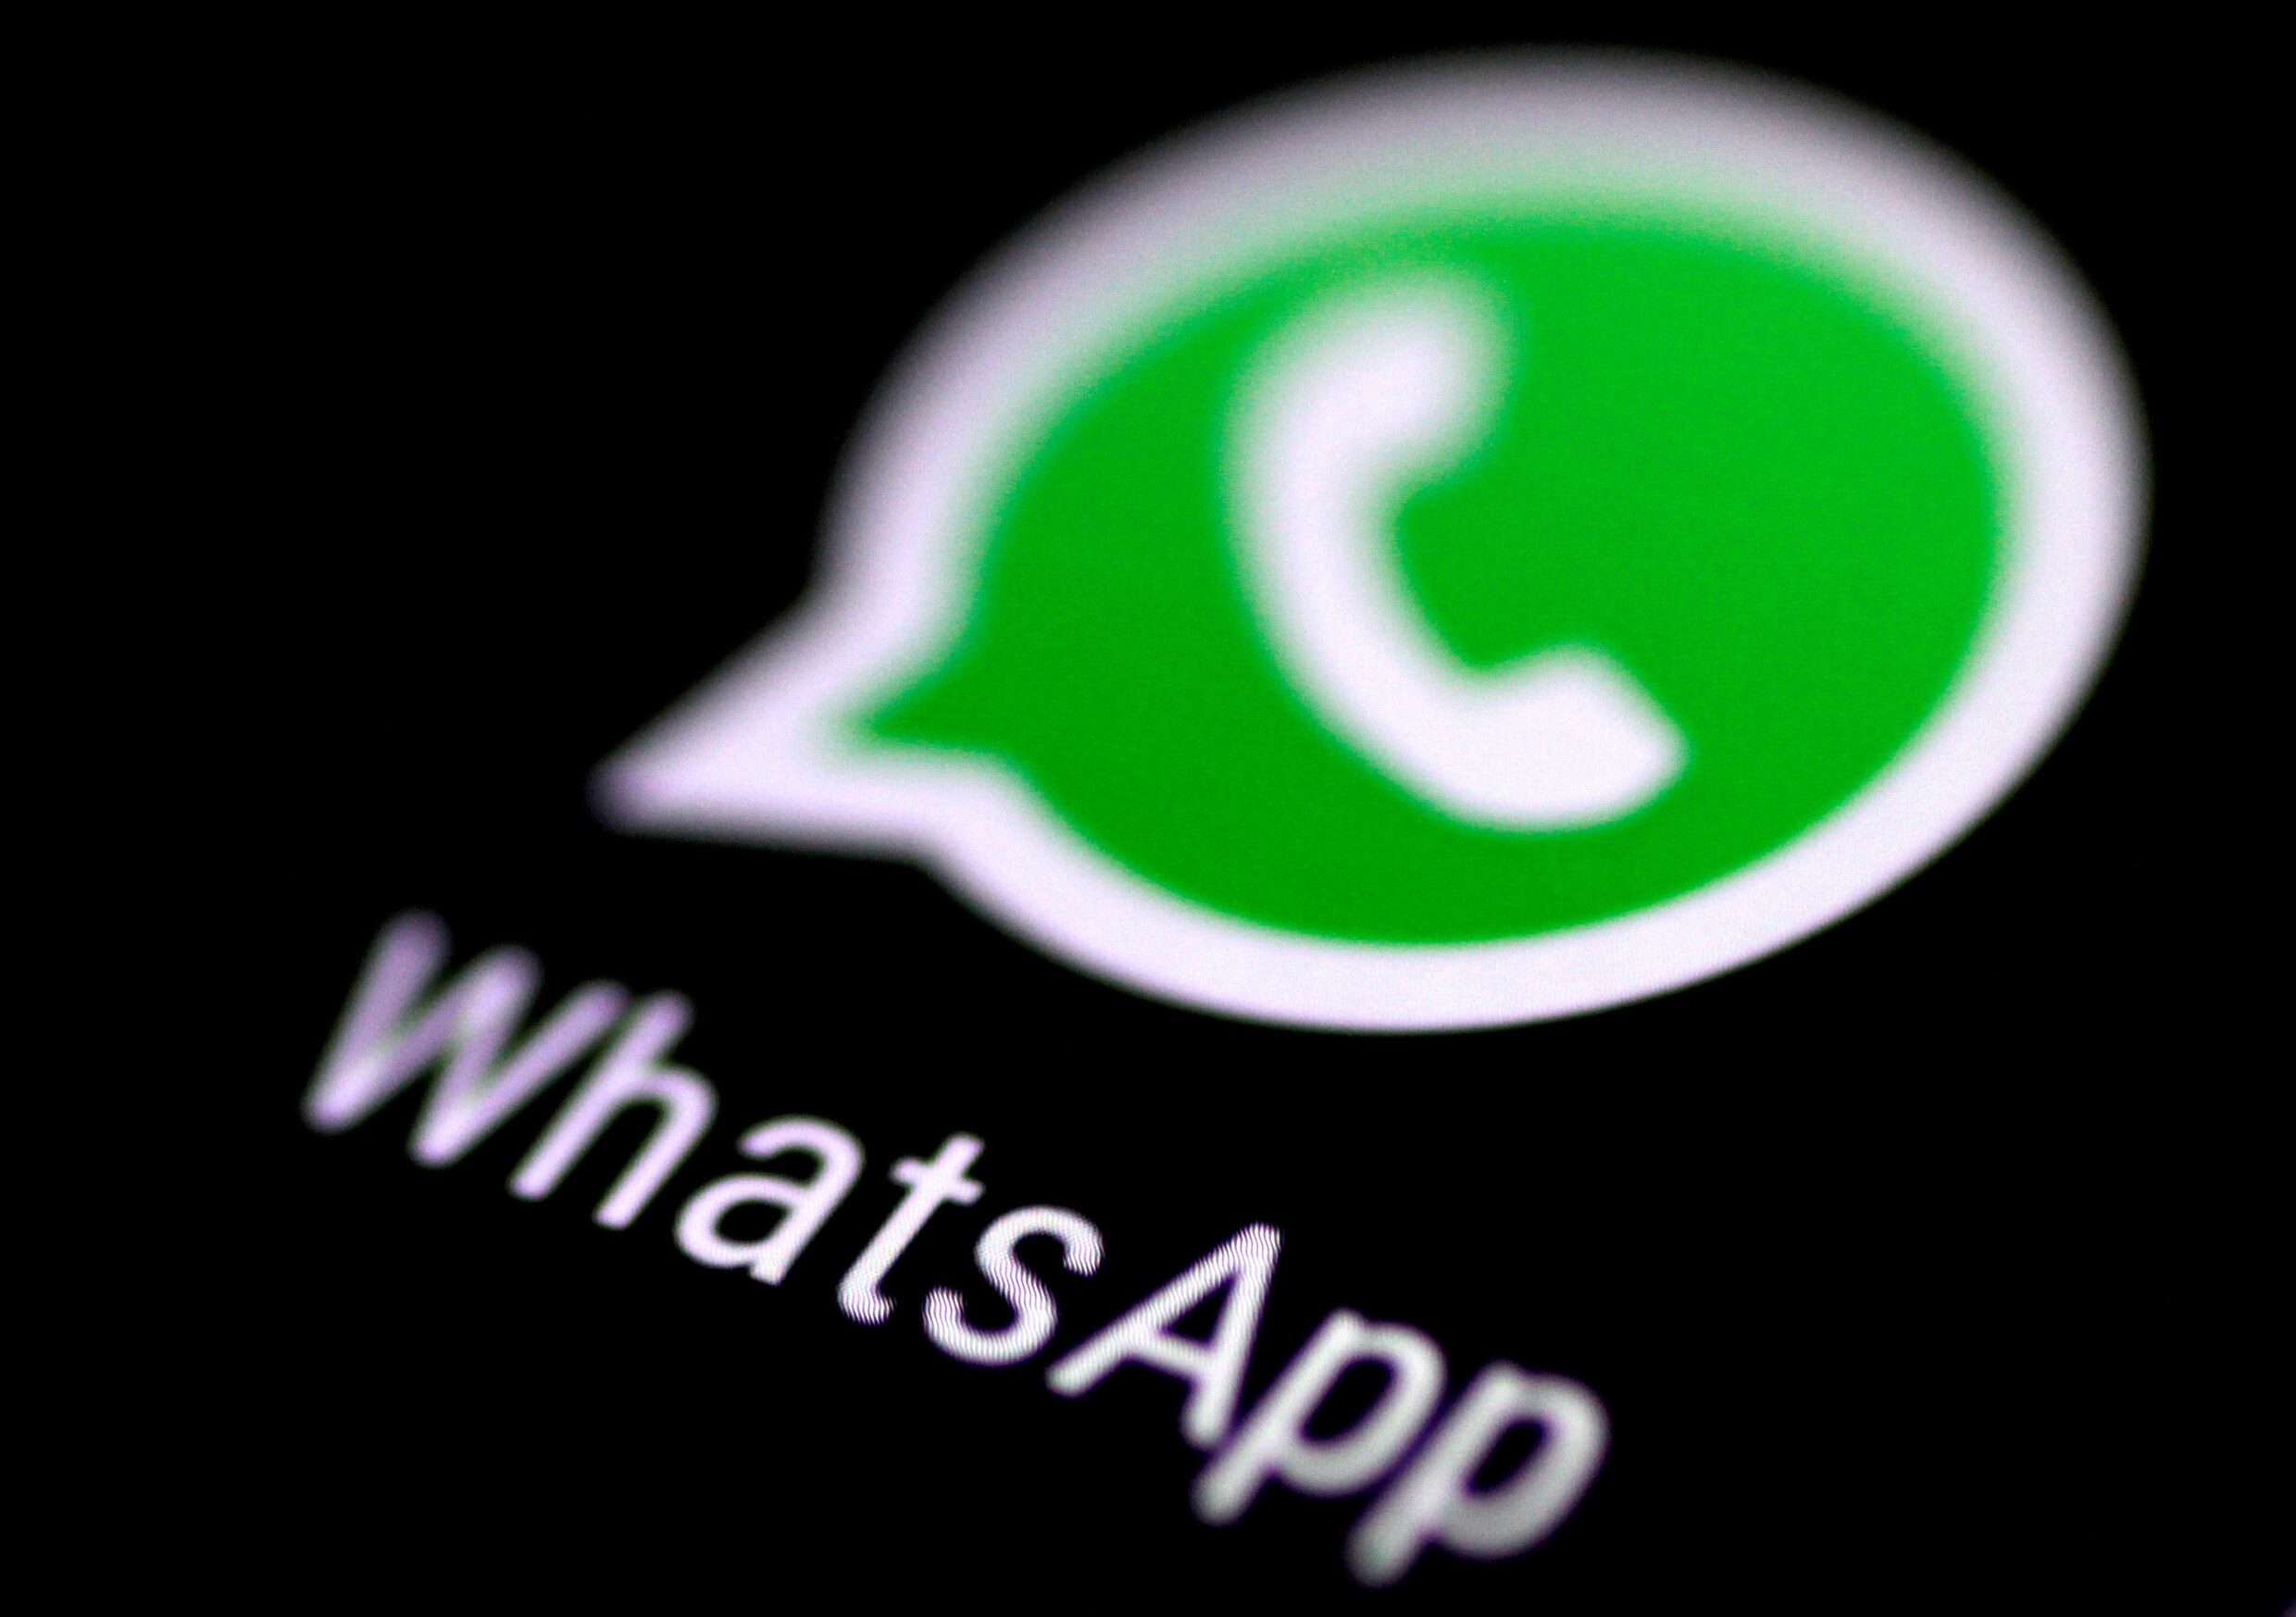 WhatsApp beperkt doorsturen berichten om geruchten en nepnieuws tegen te gaan